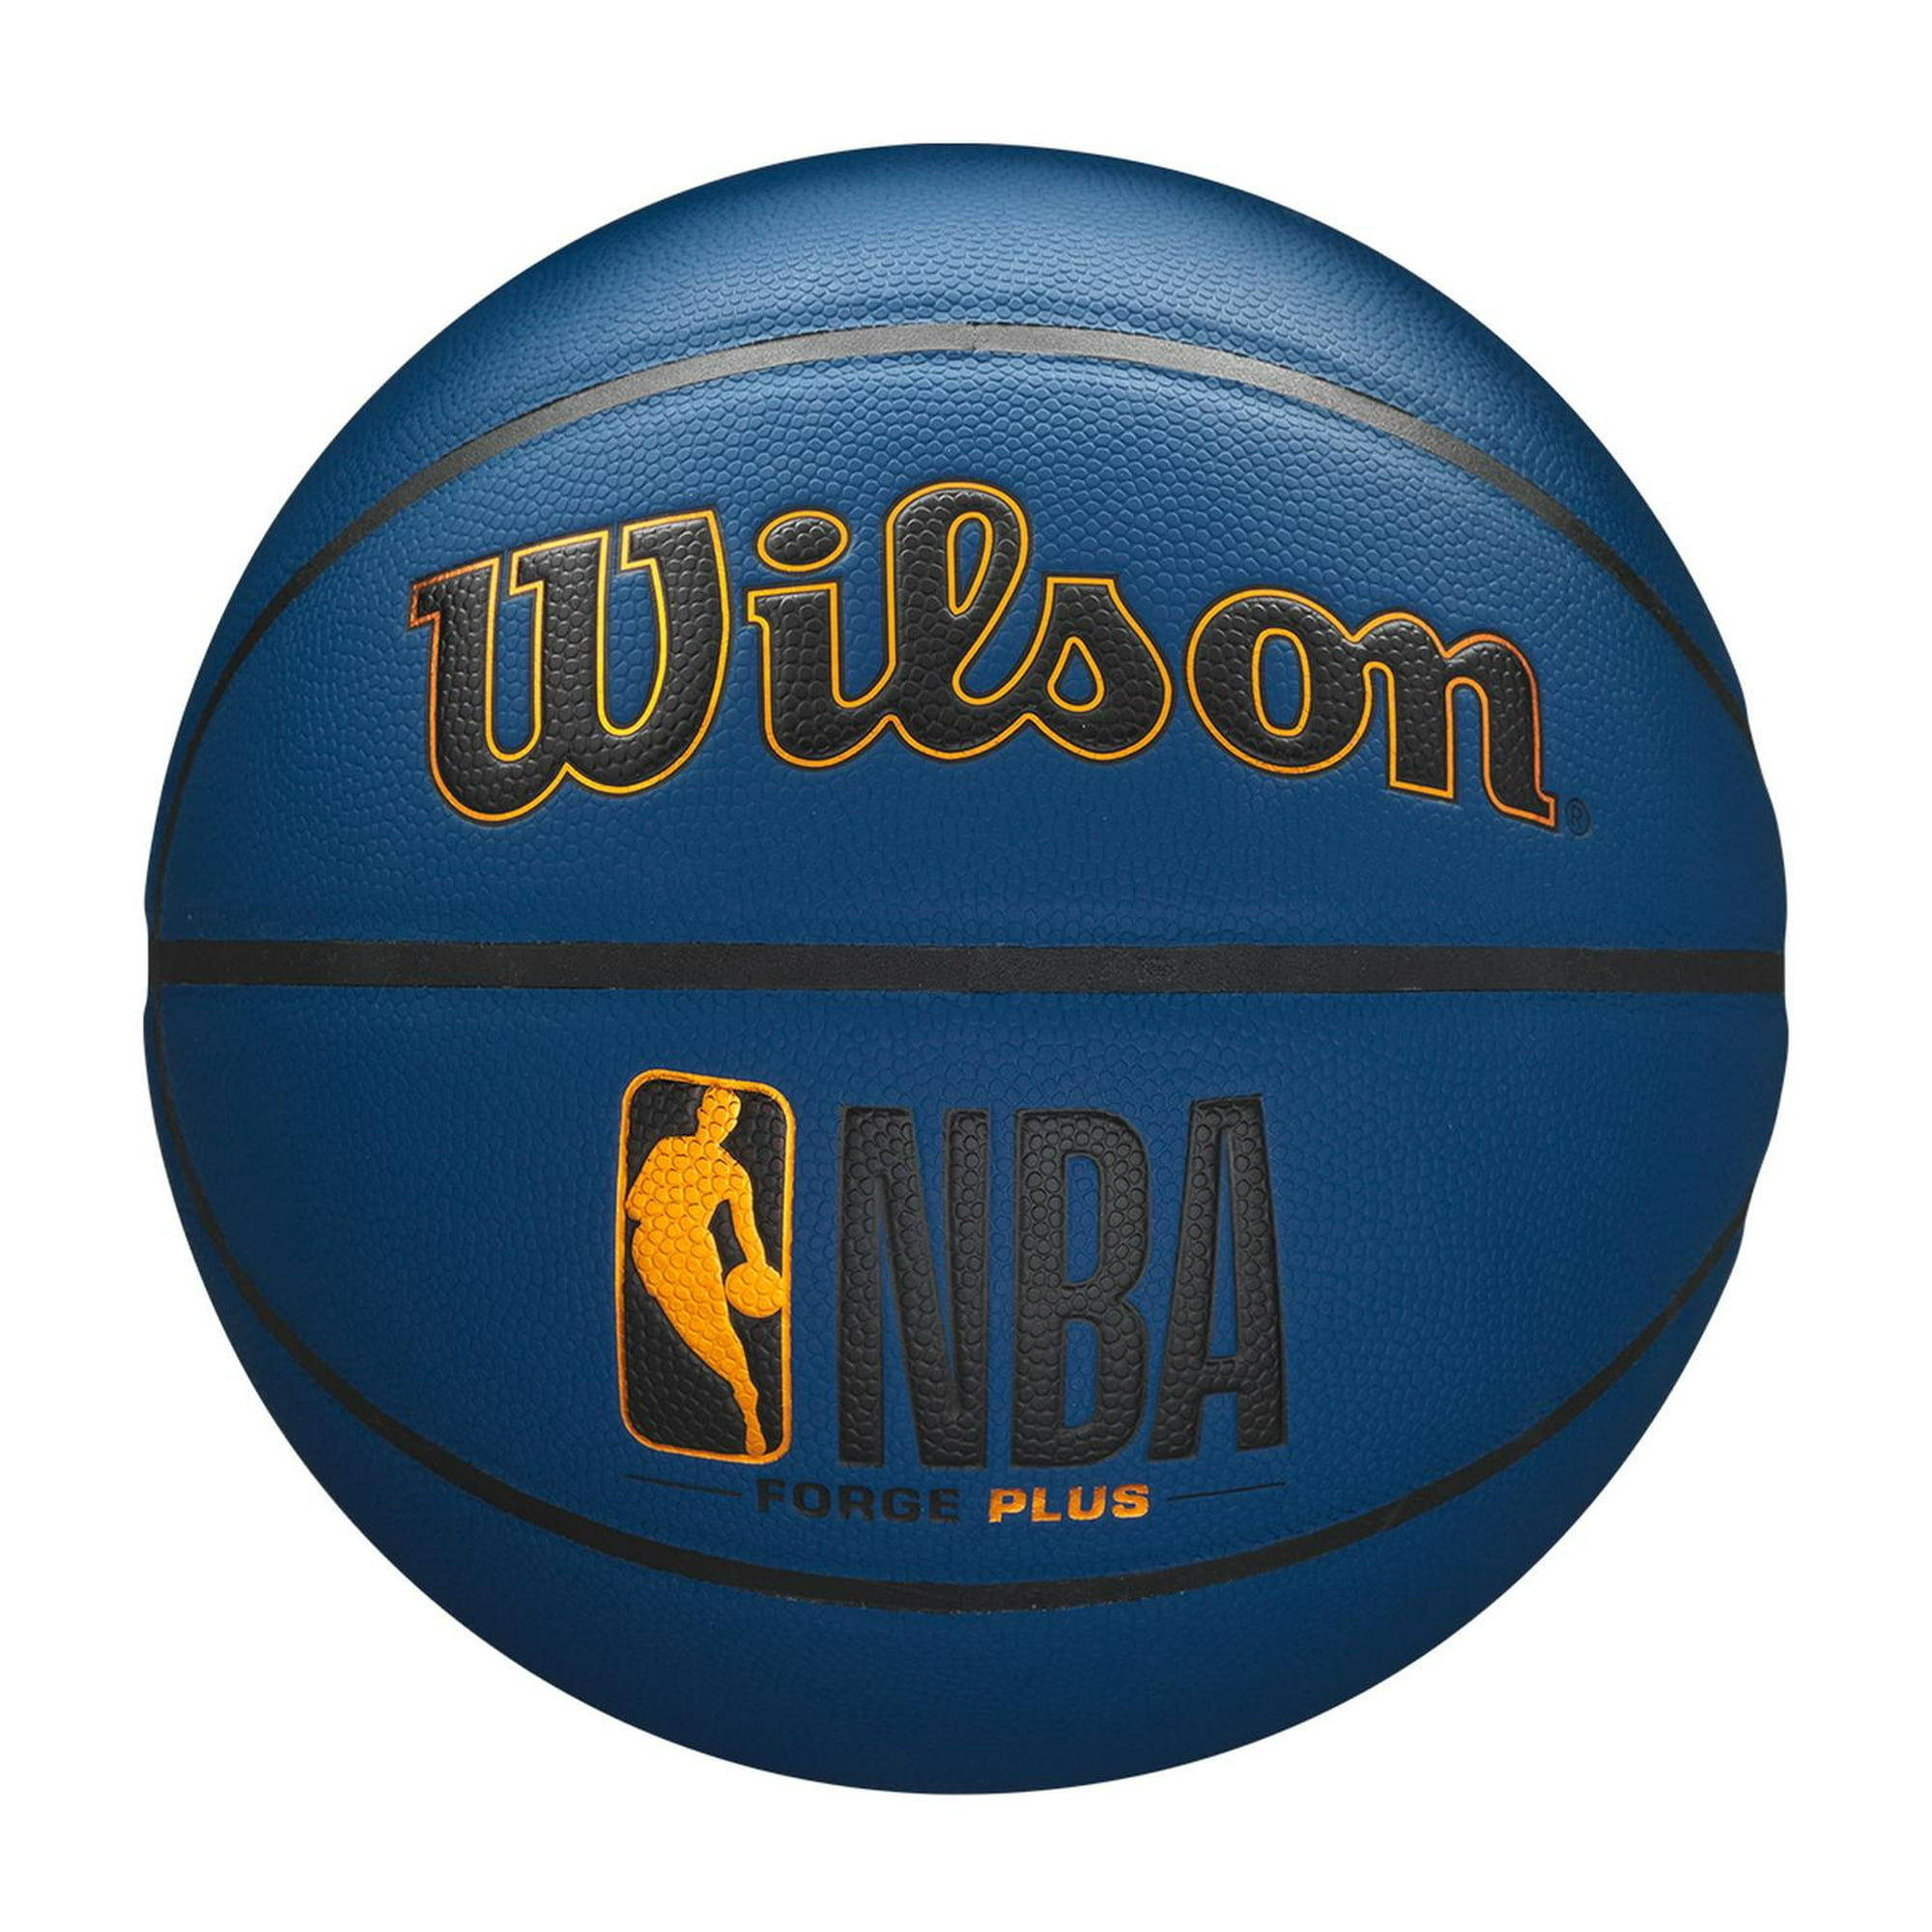 Balón Baloncesto Wilson All Team Nba Basketball #7 WILSON